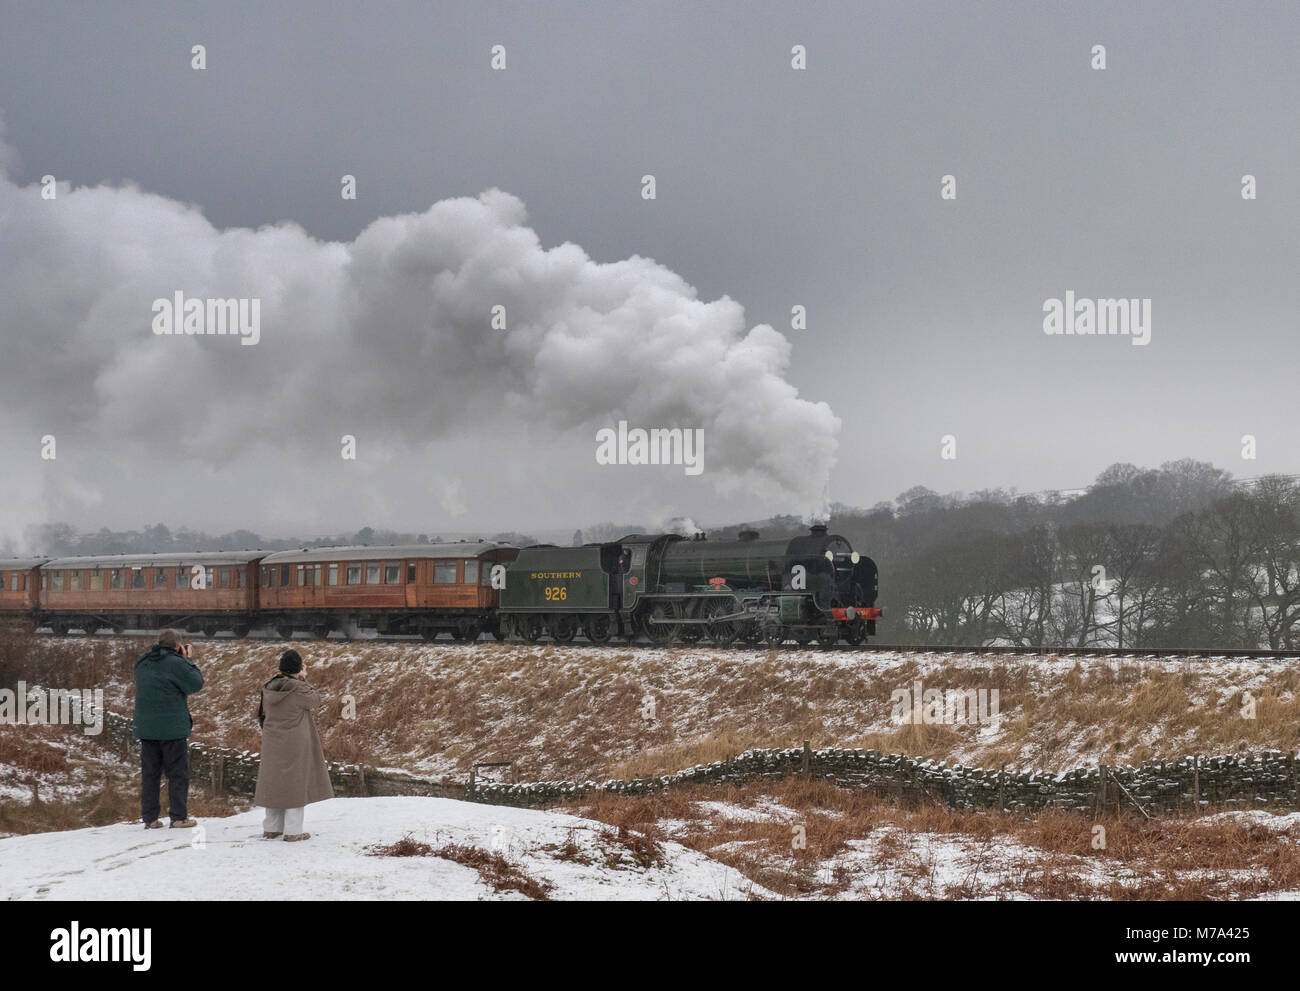 North York Moors Railway. Les amateurs de train locomotive à vapeur watch:Repton train tirant à Pickering Yorkshire UK Banque D'Images